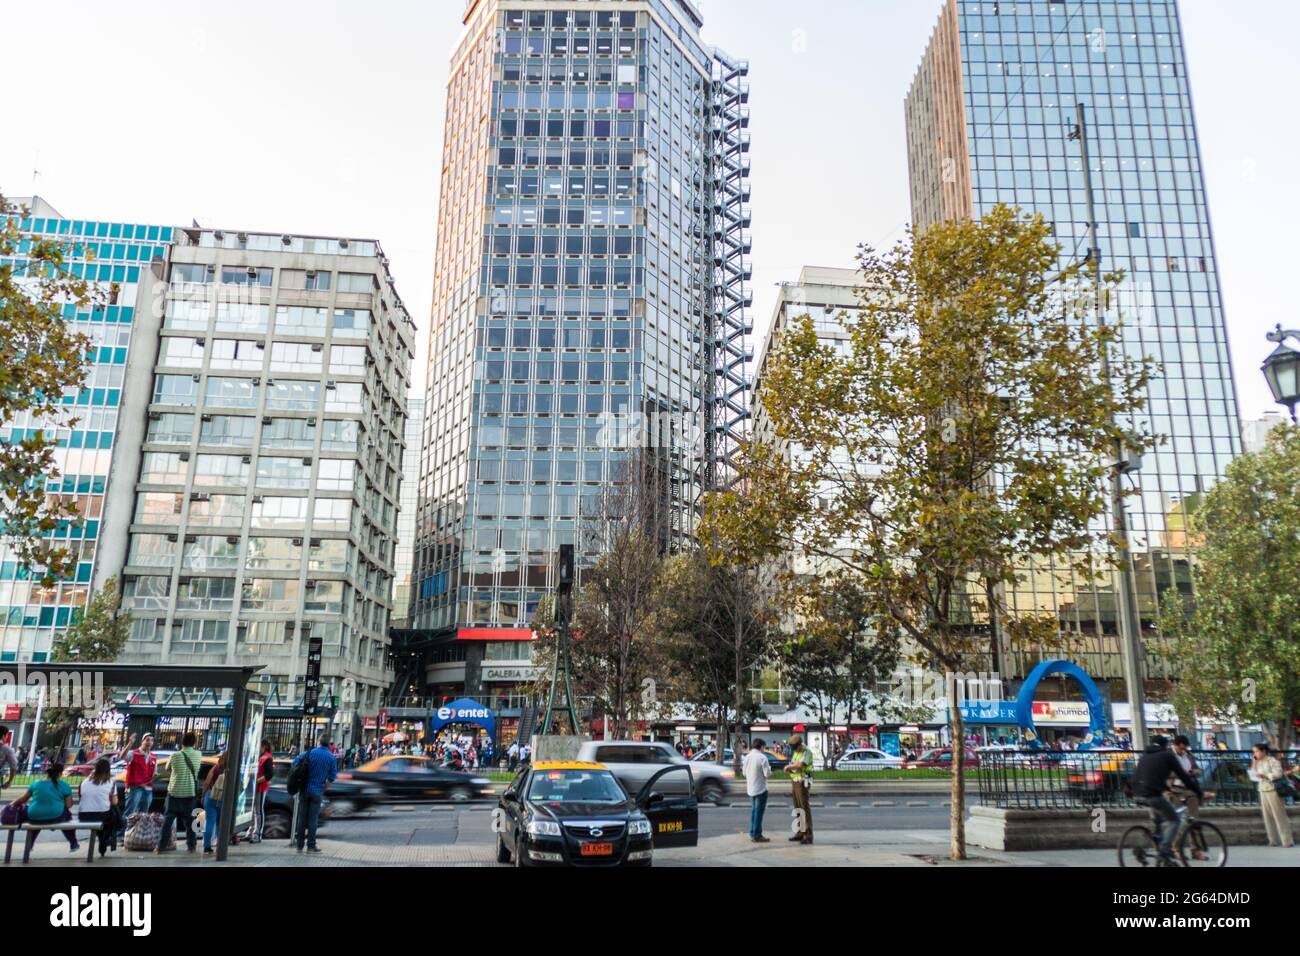 SANTIAGO, CHILE - MARCH 27, 2015: View of Avenida Libertador Bernardo O'Higgins avenue in Santiago, Chile Stock Photo